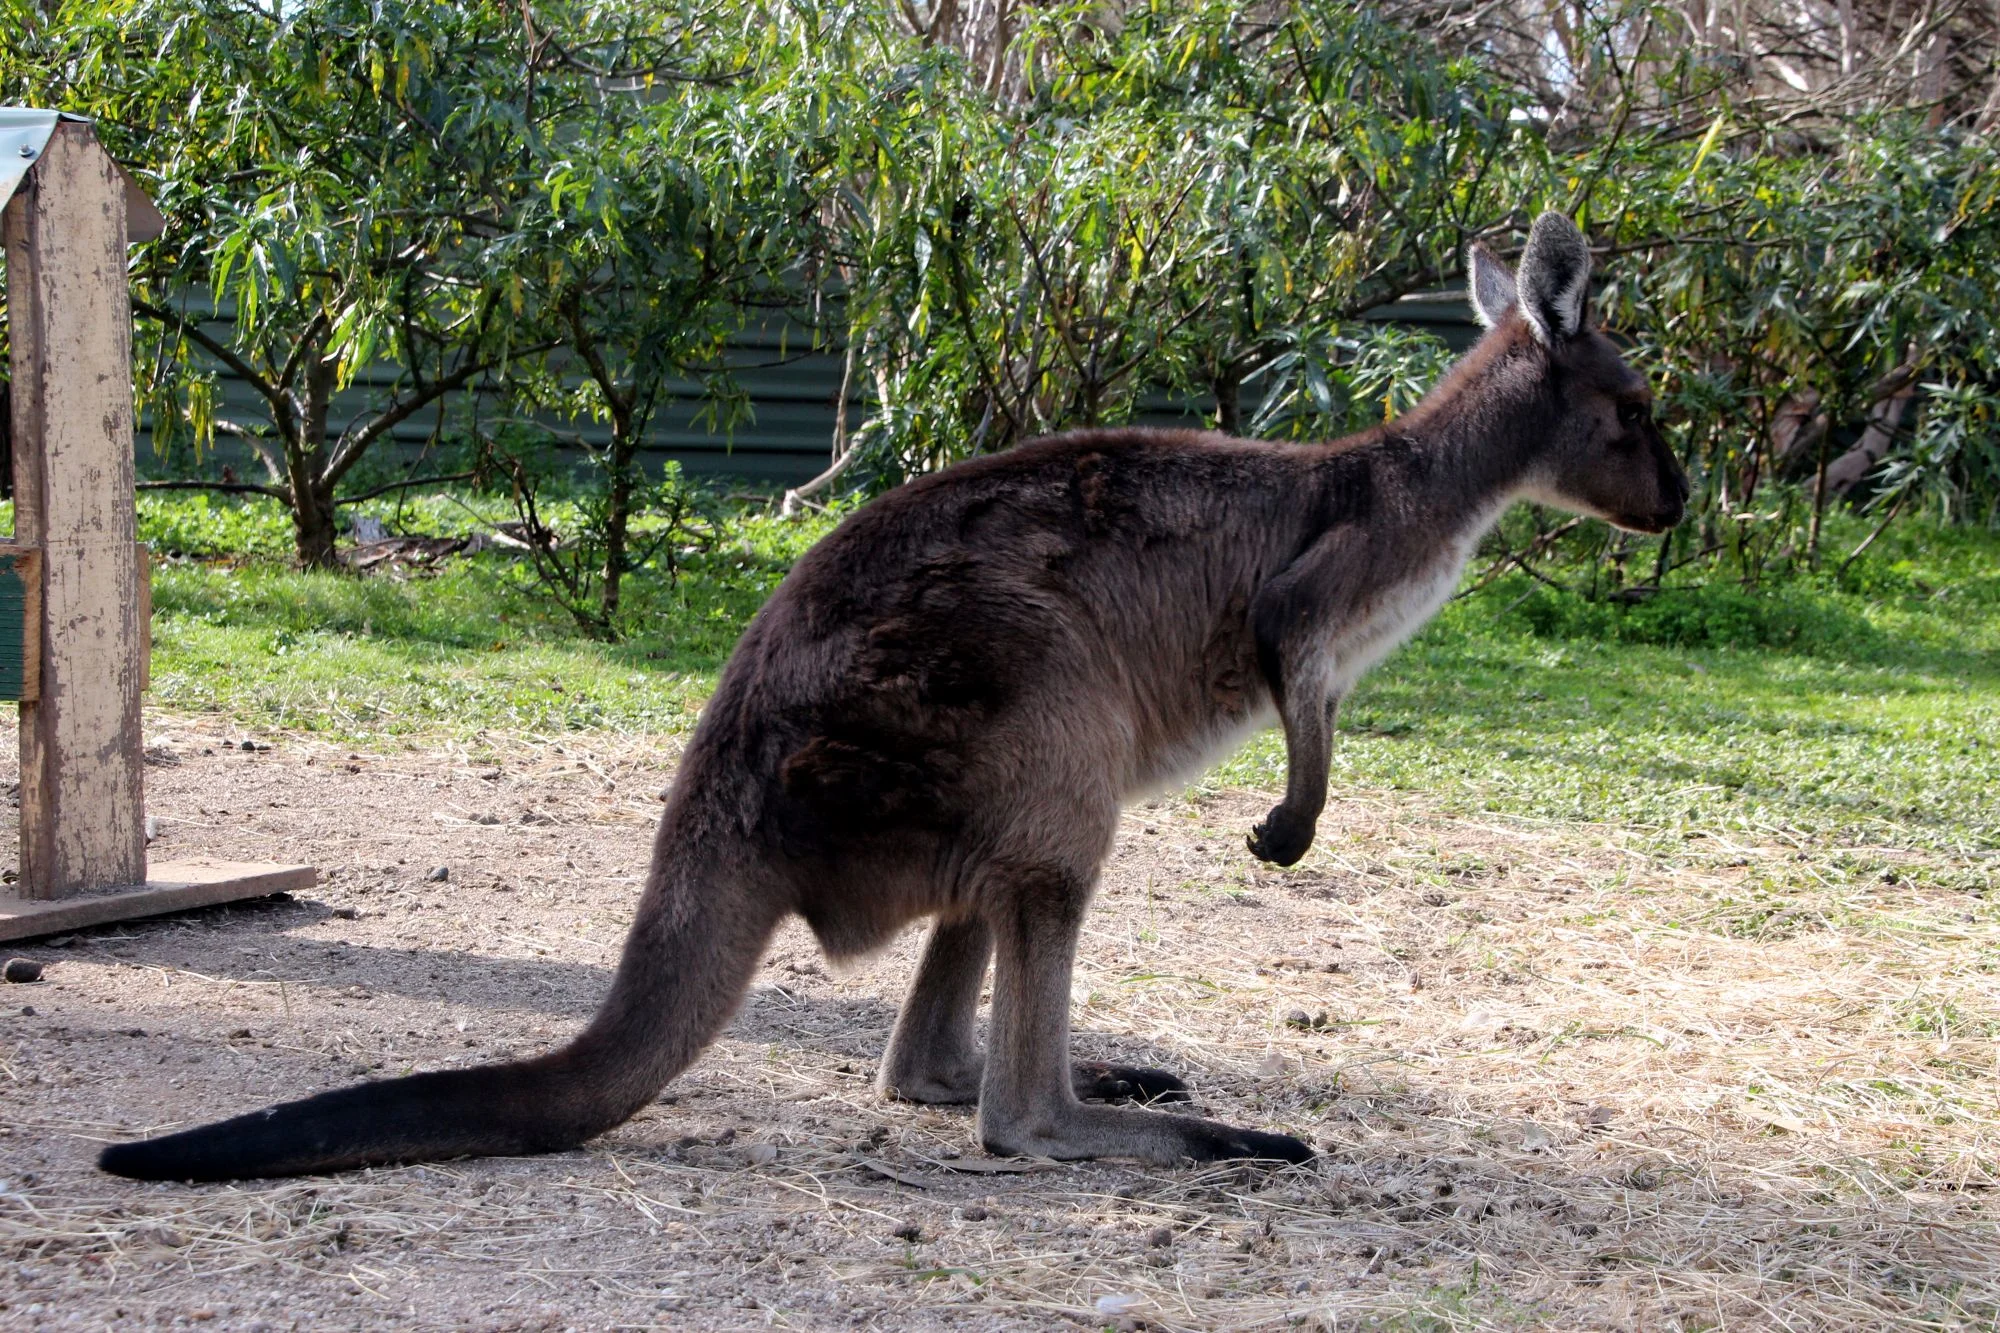 Kangaroo at Kyabram Fauna Park, Echuca